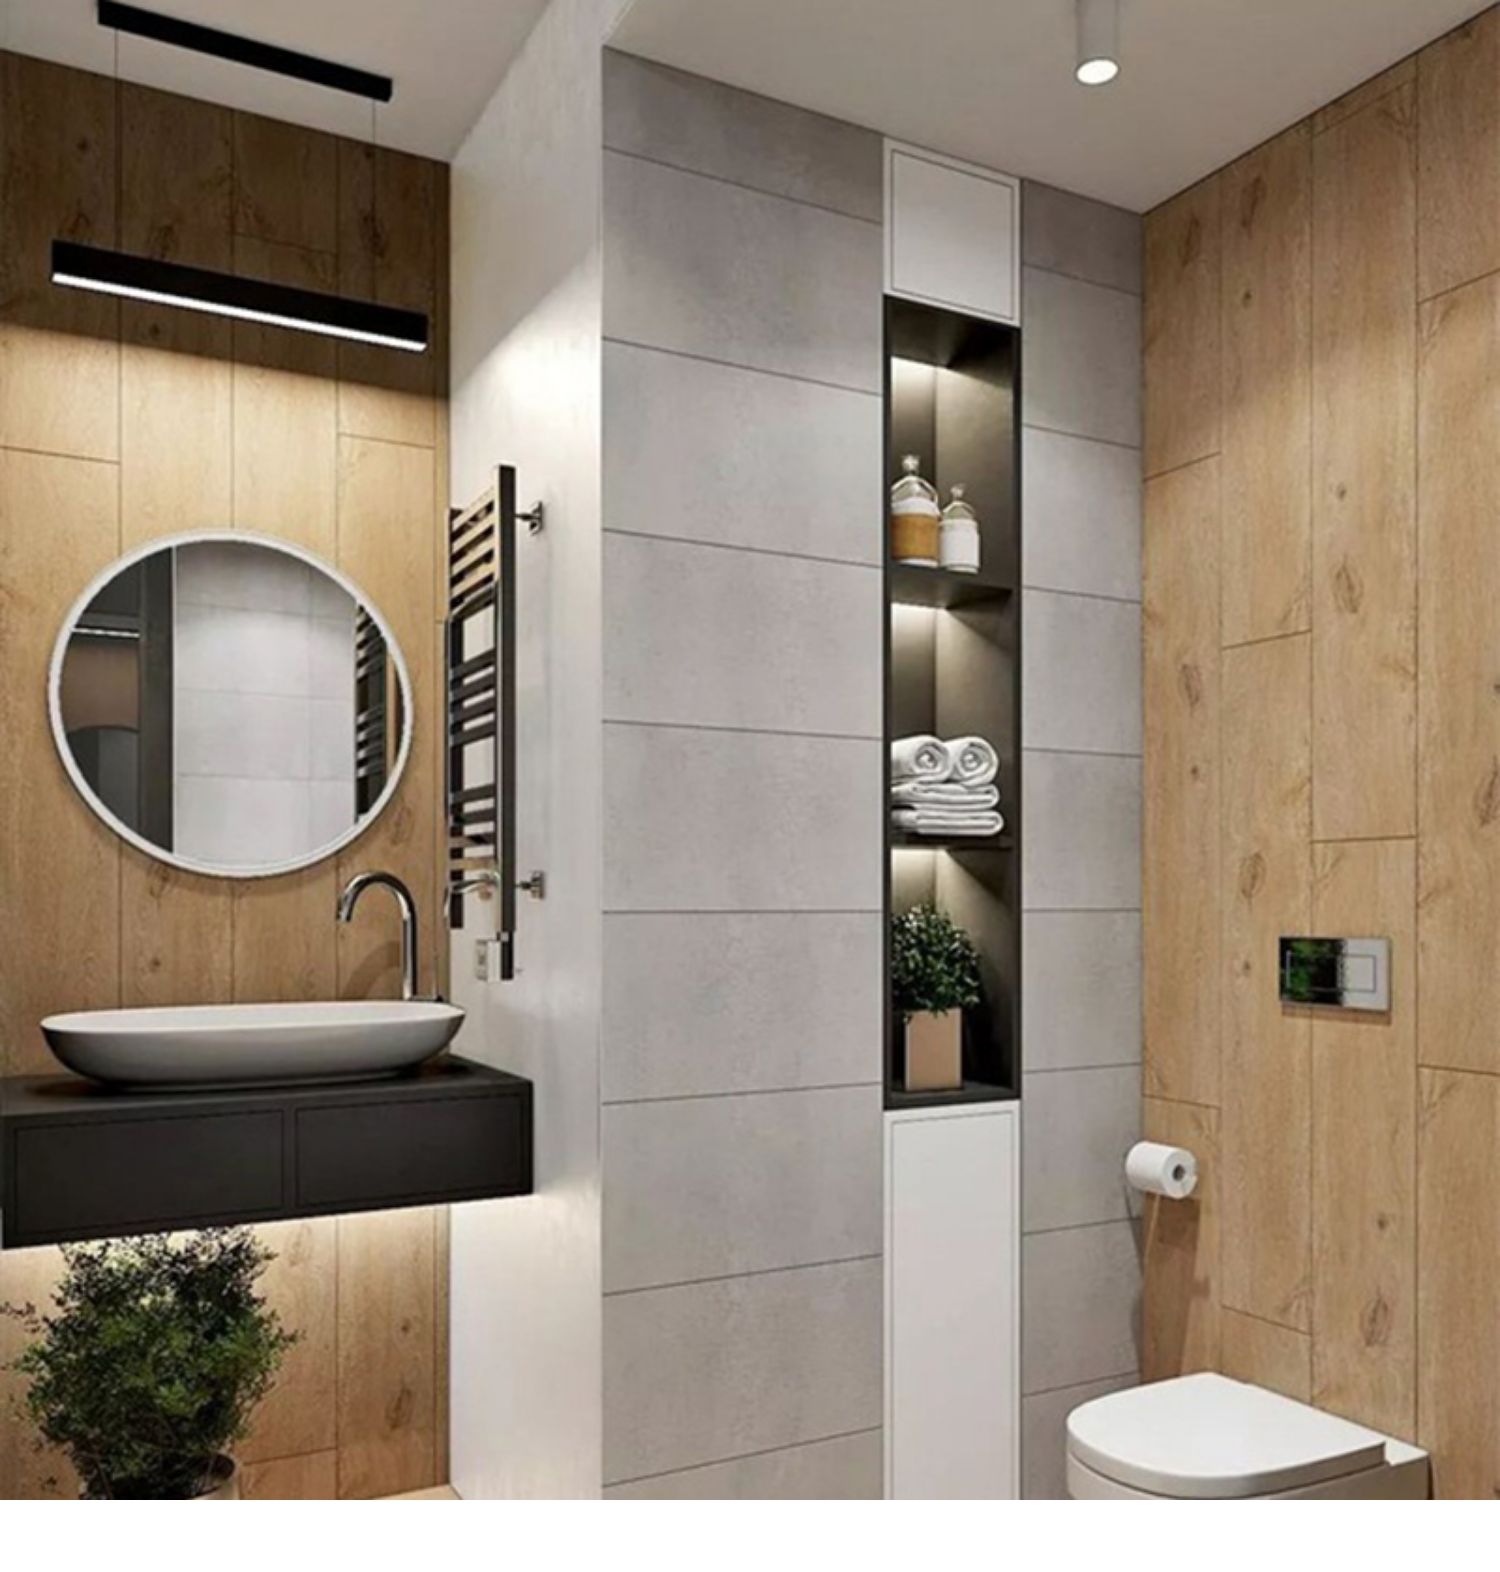 壁龛浴室嵌入式定制不锈钢隔板灯带时尚卫生间淋浴房壁龛柜置物架定做